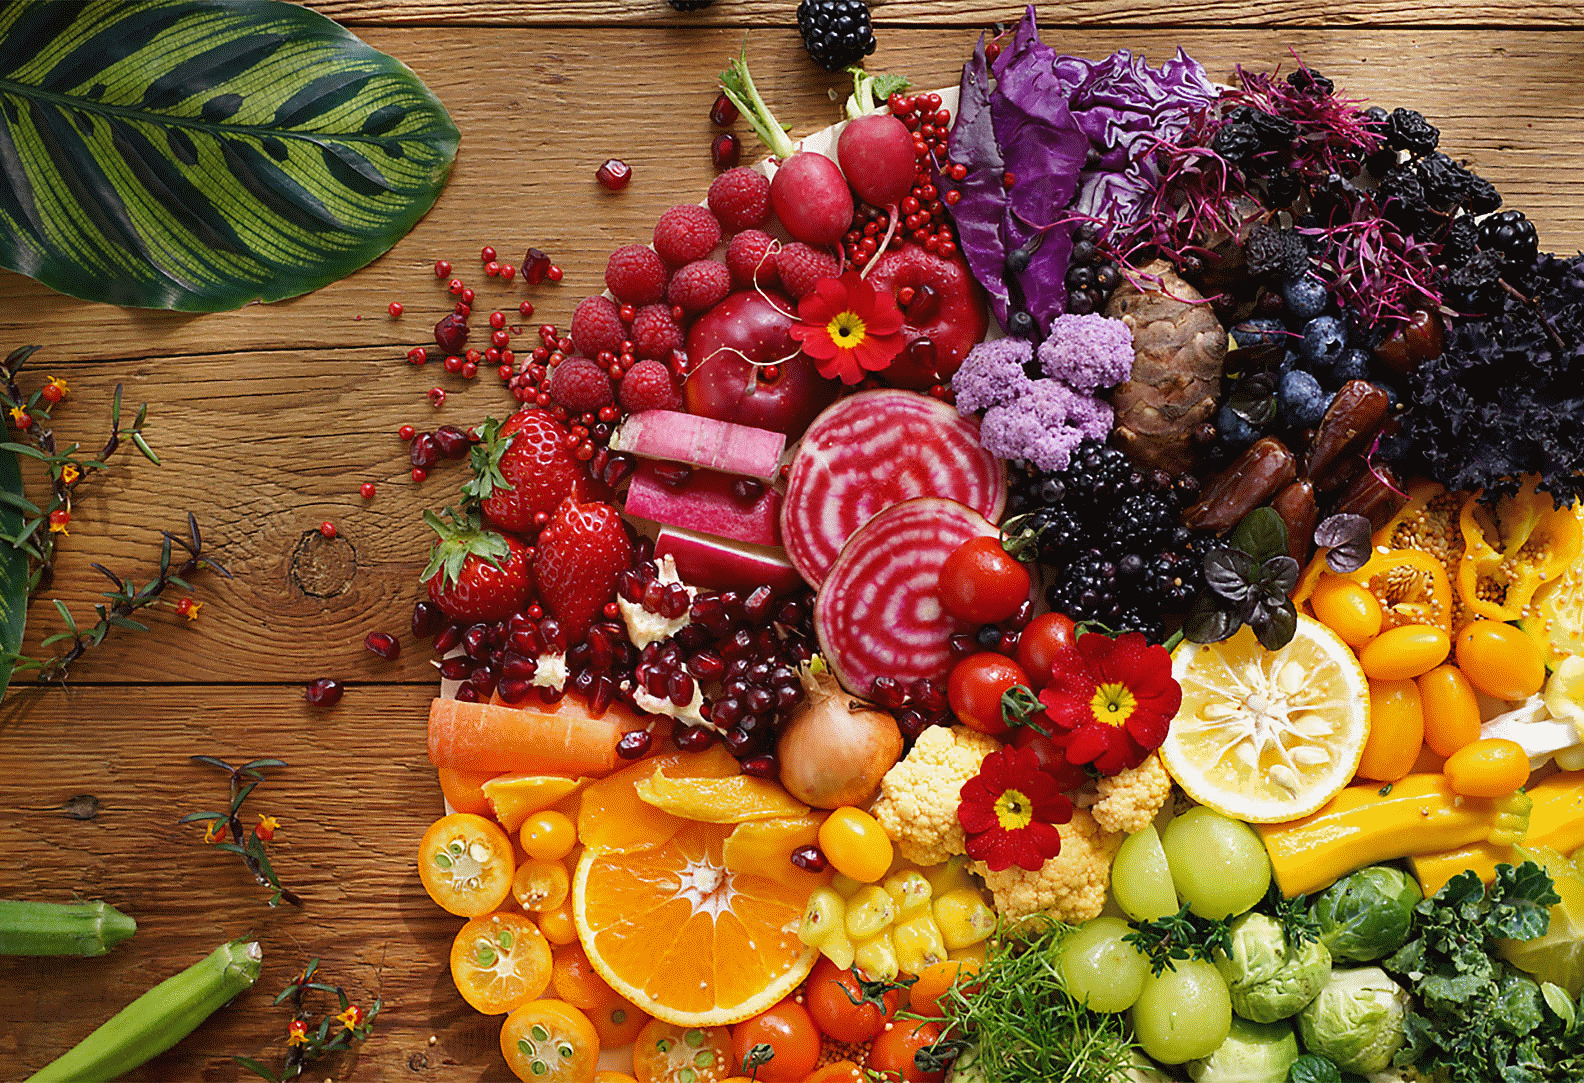 Bu lensle çekilmiş renkli sebze ve meyvelerin her köşede yüksek çözünürlüklü görüntüsü